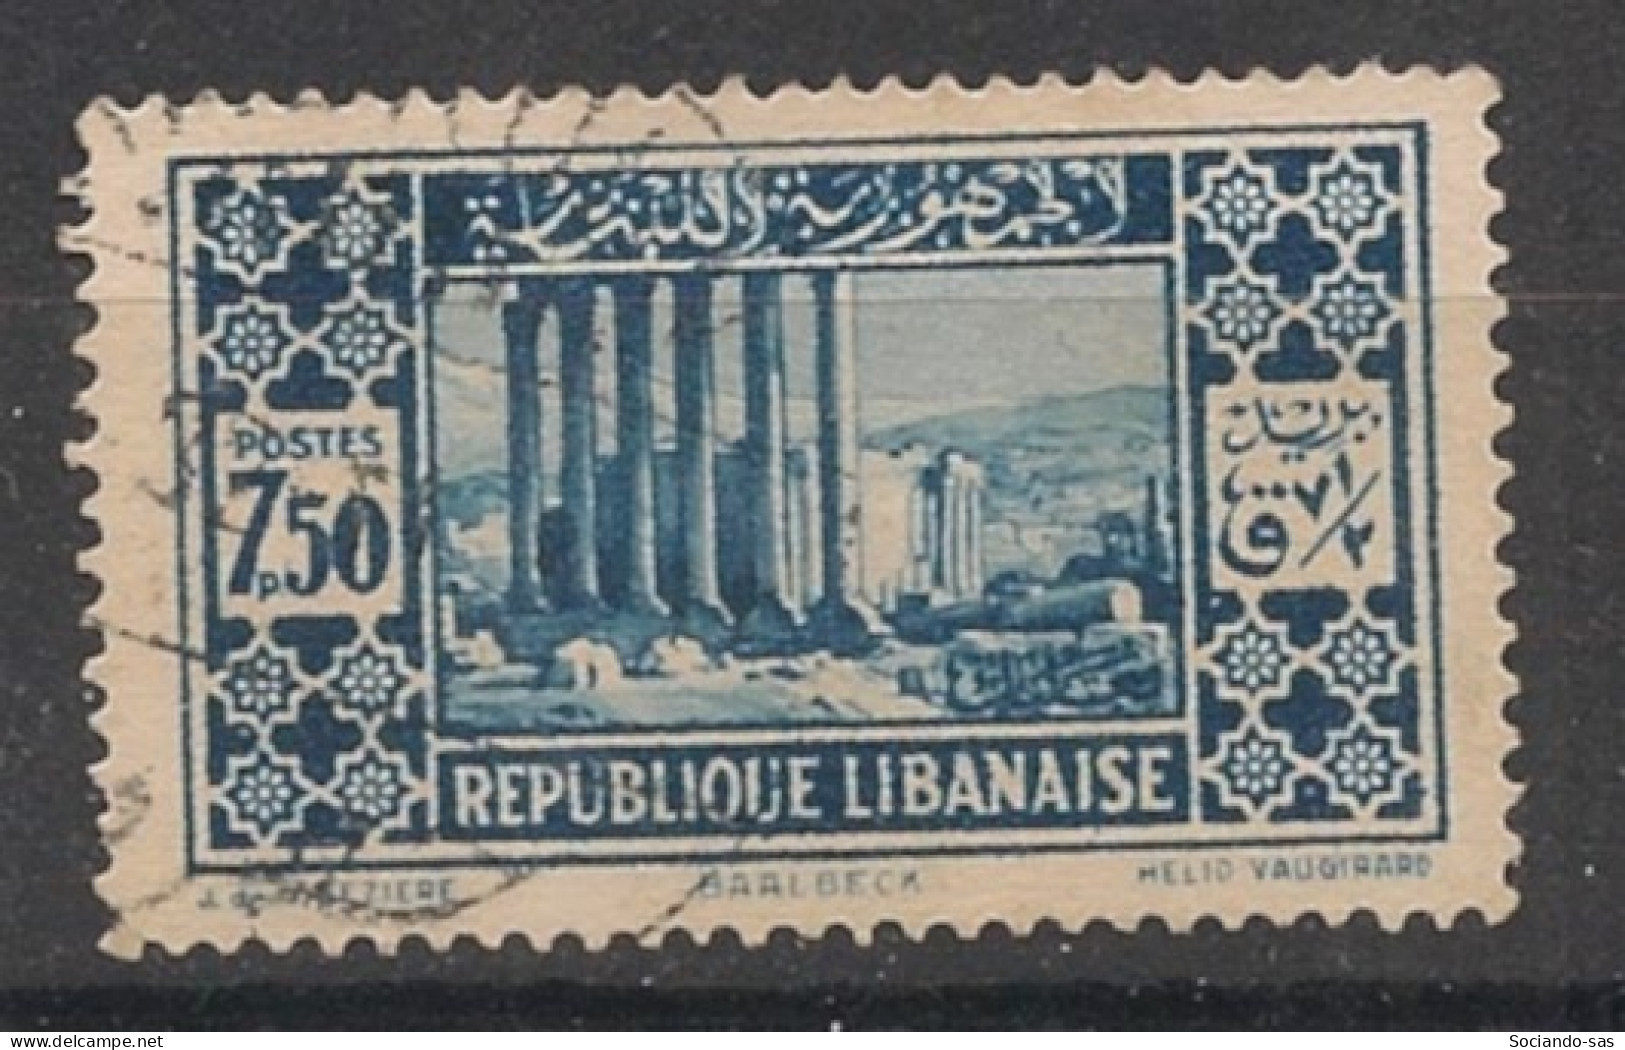 GRAND LIBAN - 1930-35 - N°YT. 143 - Baalbeck 7pi50 Bleu - Oblitéré / Used - Used Stamps